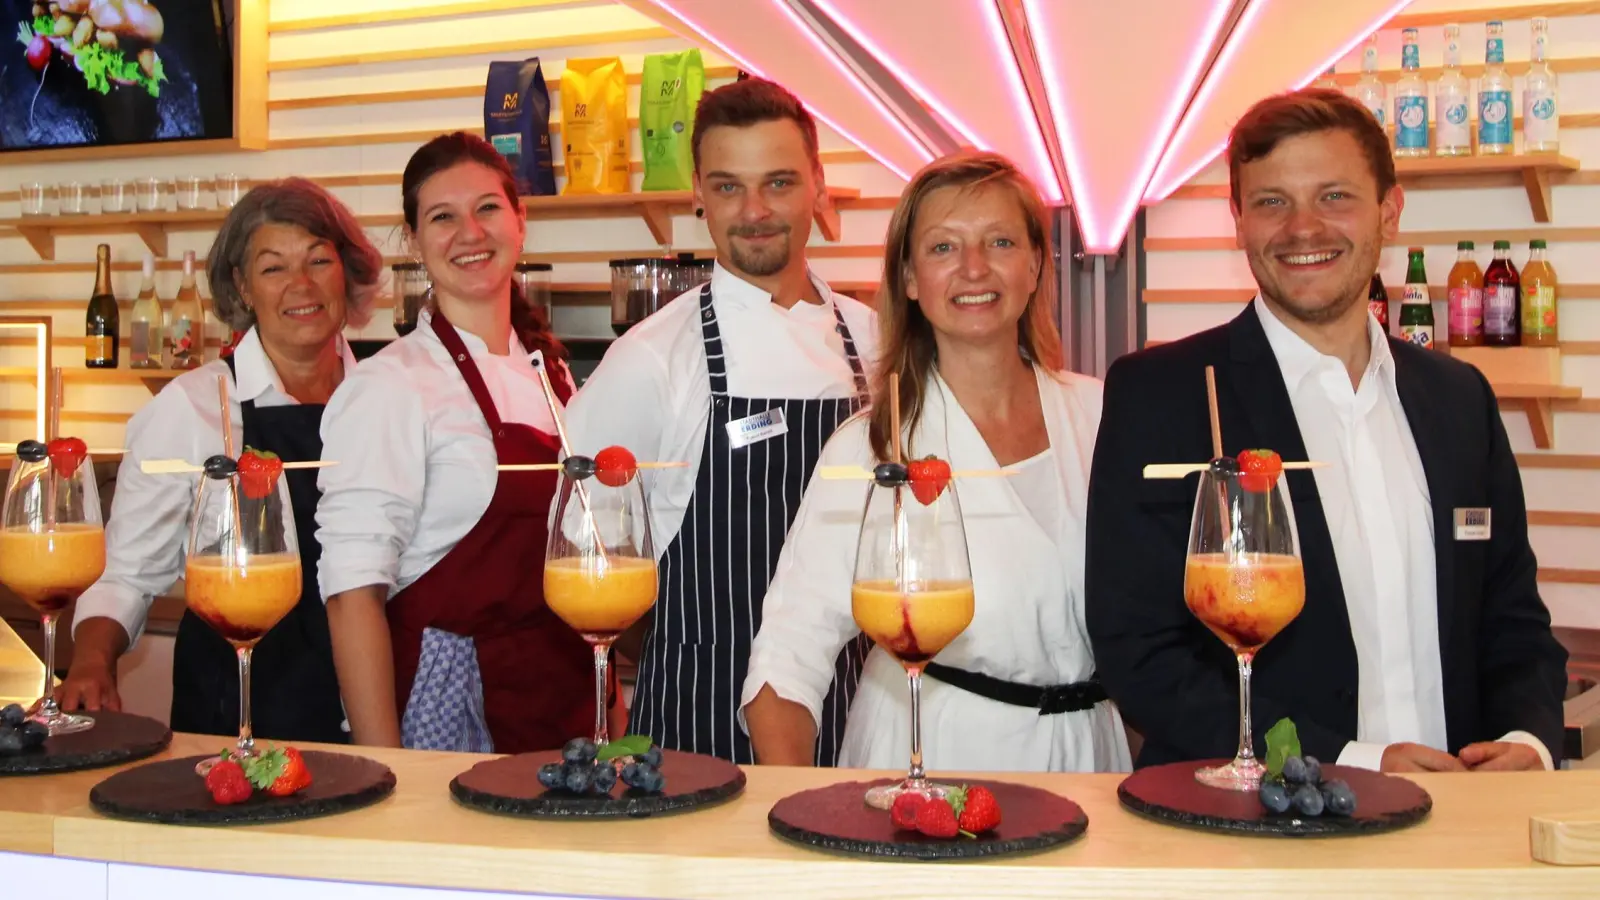 Geschäftsführerin Jutta Kistner (2. v. re.) hebt die Gastronomie mit dem neuen Team auf ein ganz neues Level. (Foto: Stadthalle Erding)